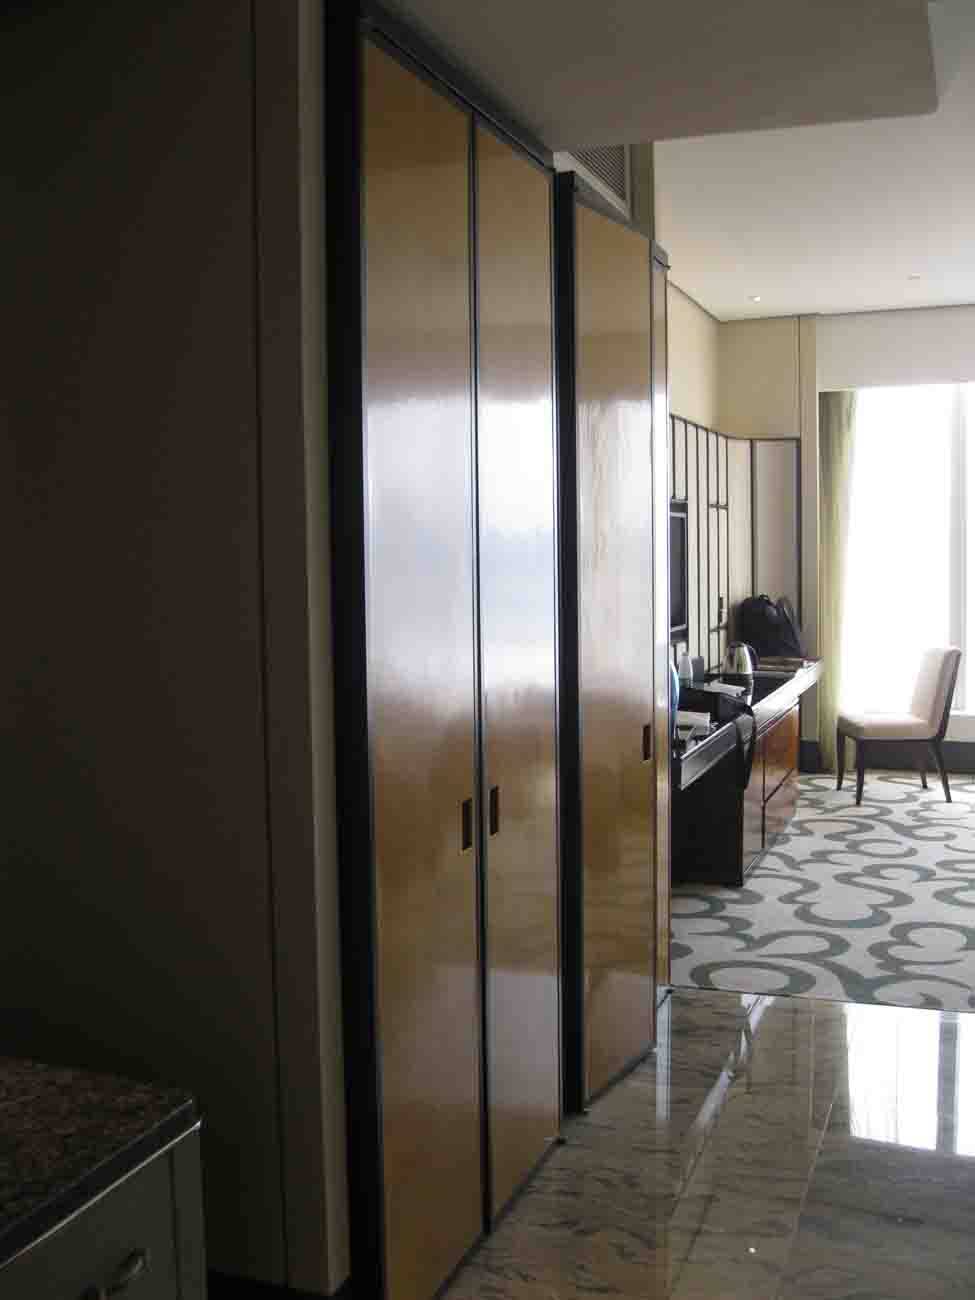 澳门美高梅酒店 MGM Macau Hotel_IMG_3021.jpg